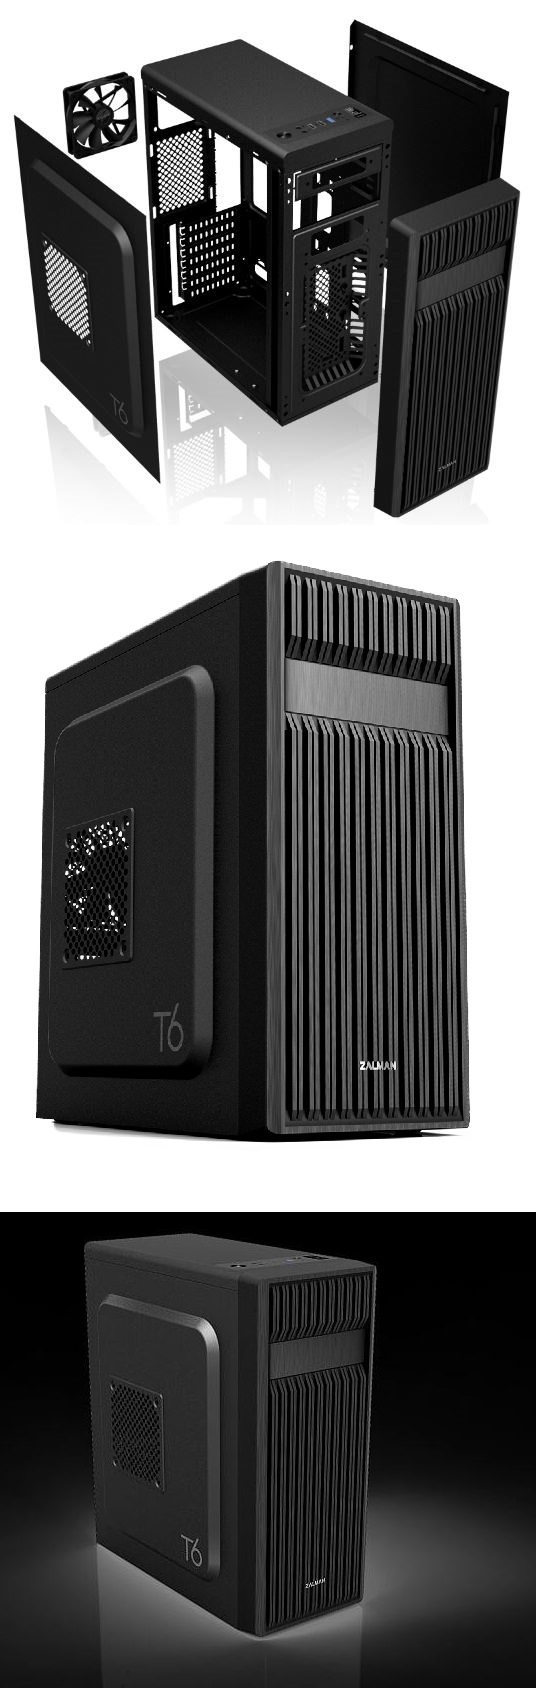 Zalman T6: Počítačová skříň v černé barvě